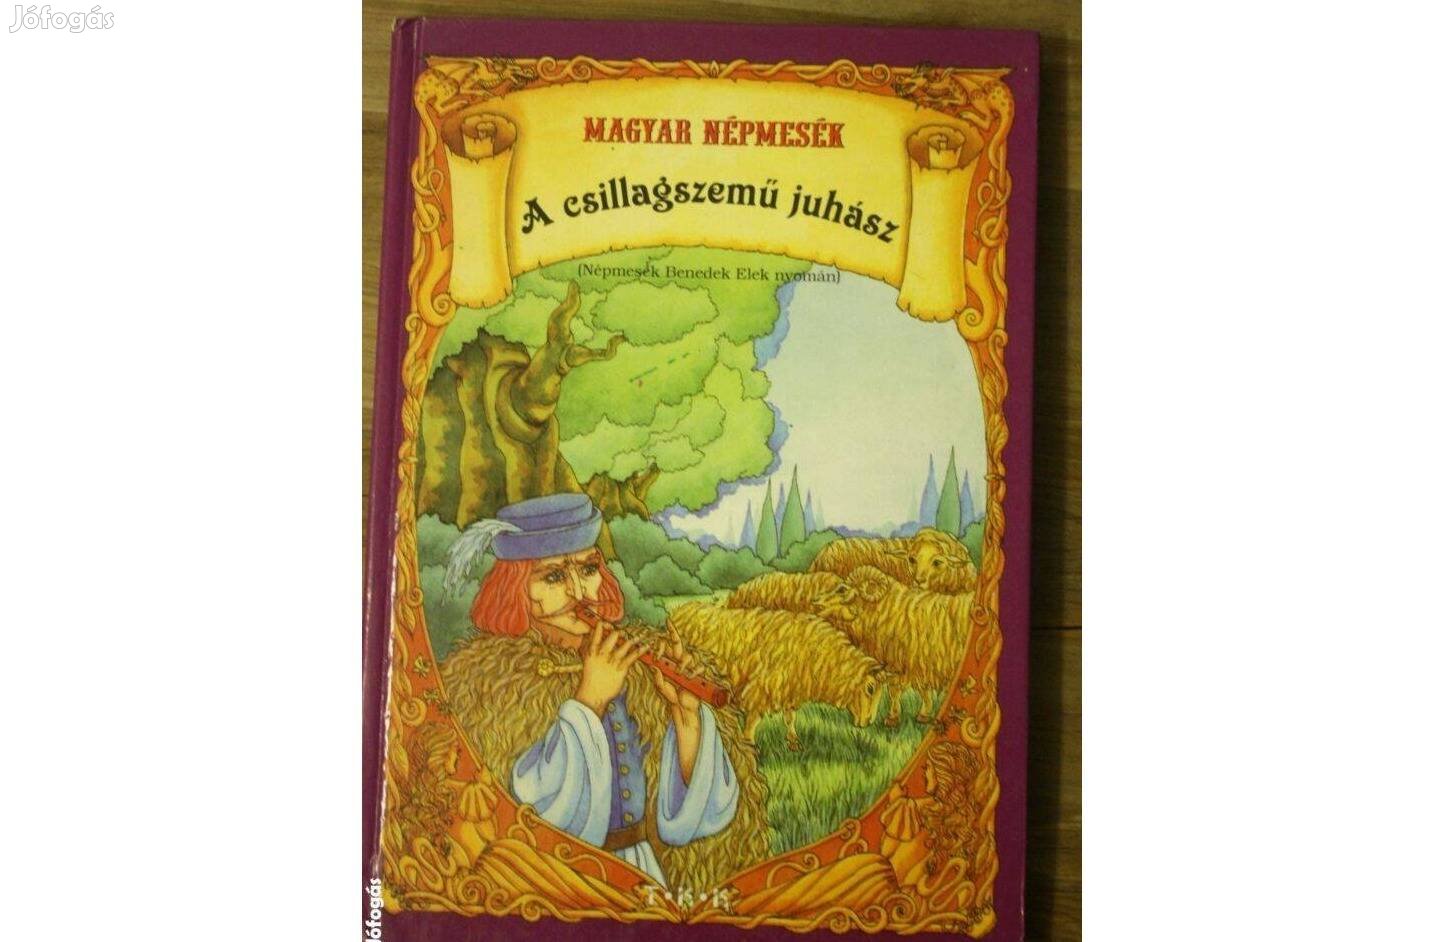 Magyar népmesék- A csillagszemű juhász mesekönyv